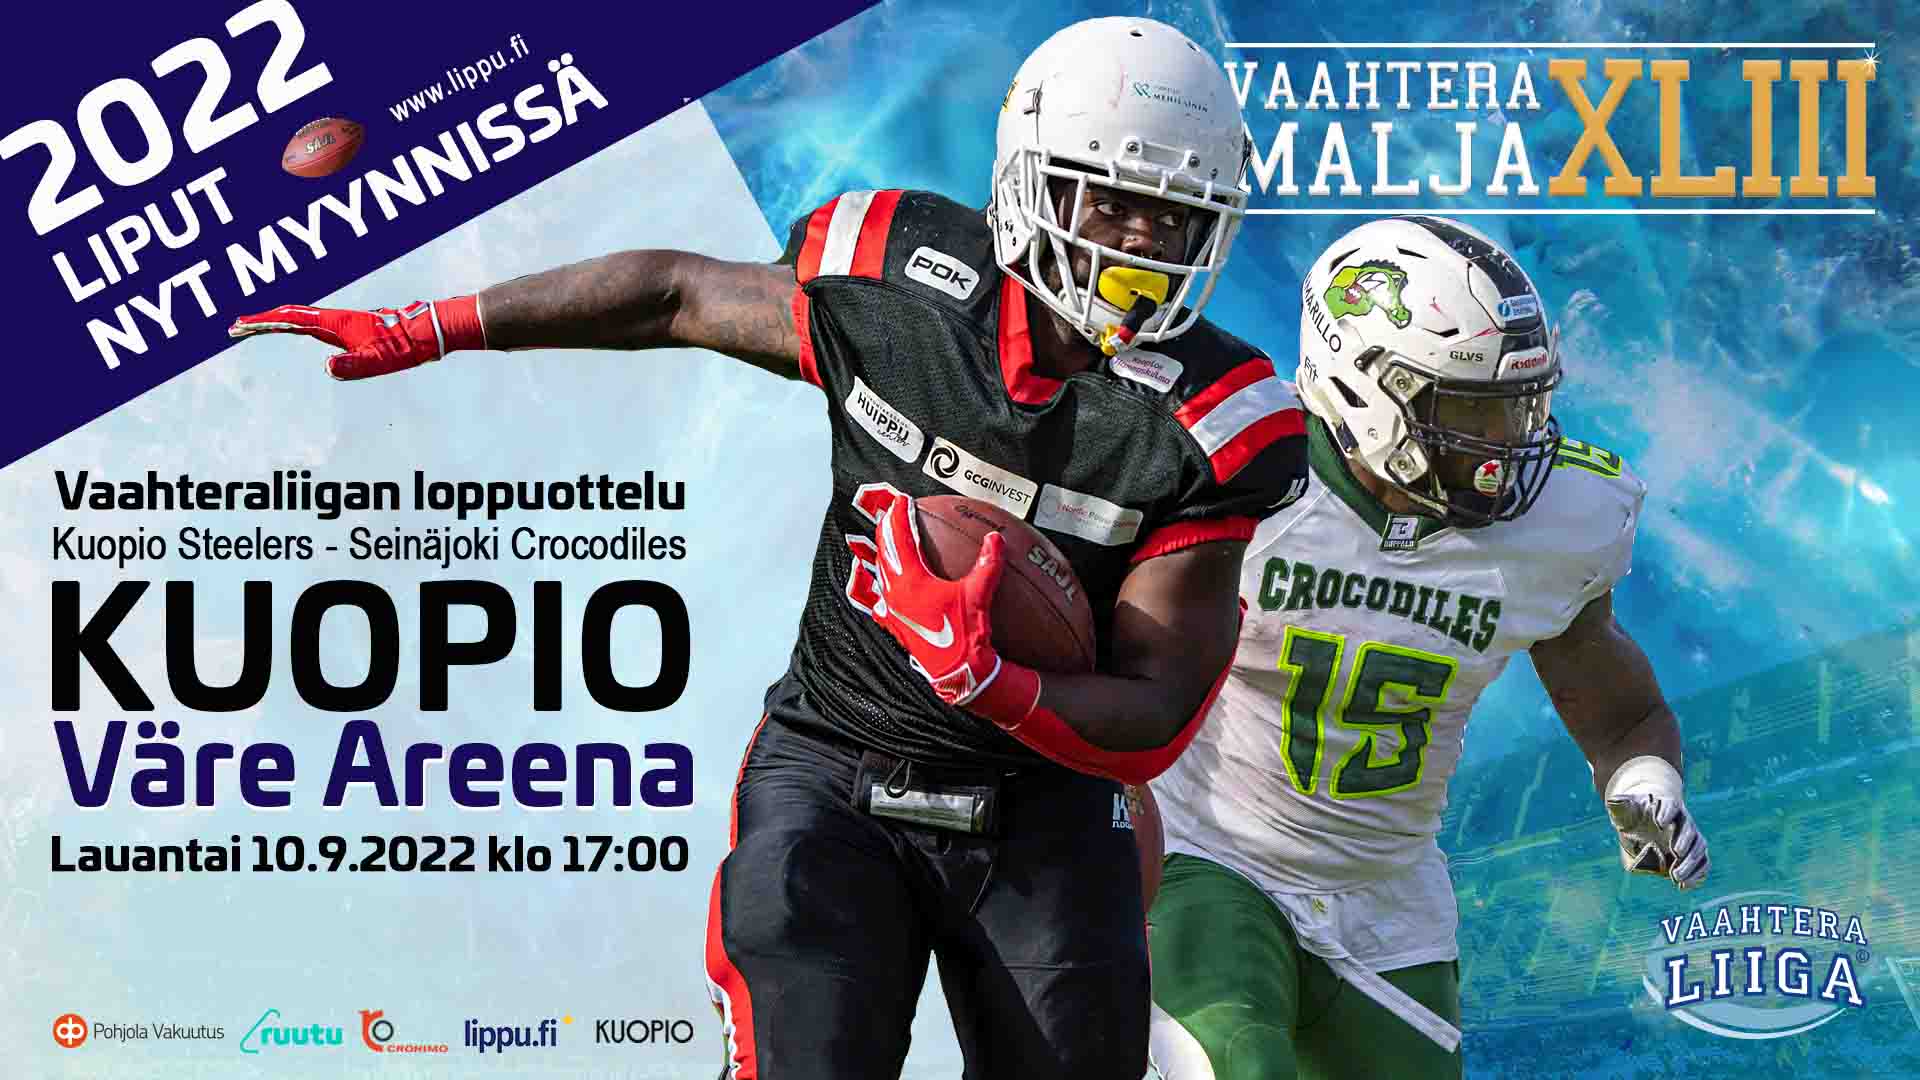 look in sweater Violate Vaahteramalja XLIII:n 10.9.2022 Kuopion Väre Areenalla - Vaahteraliiga